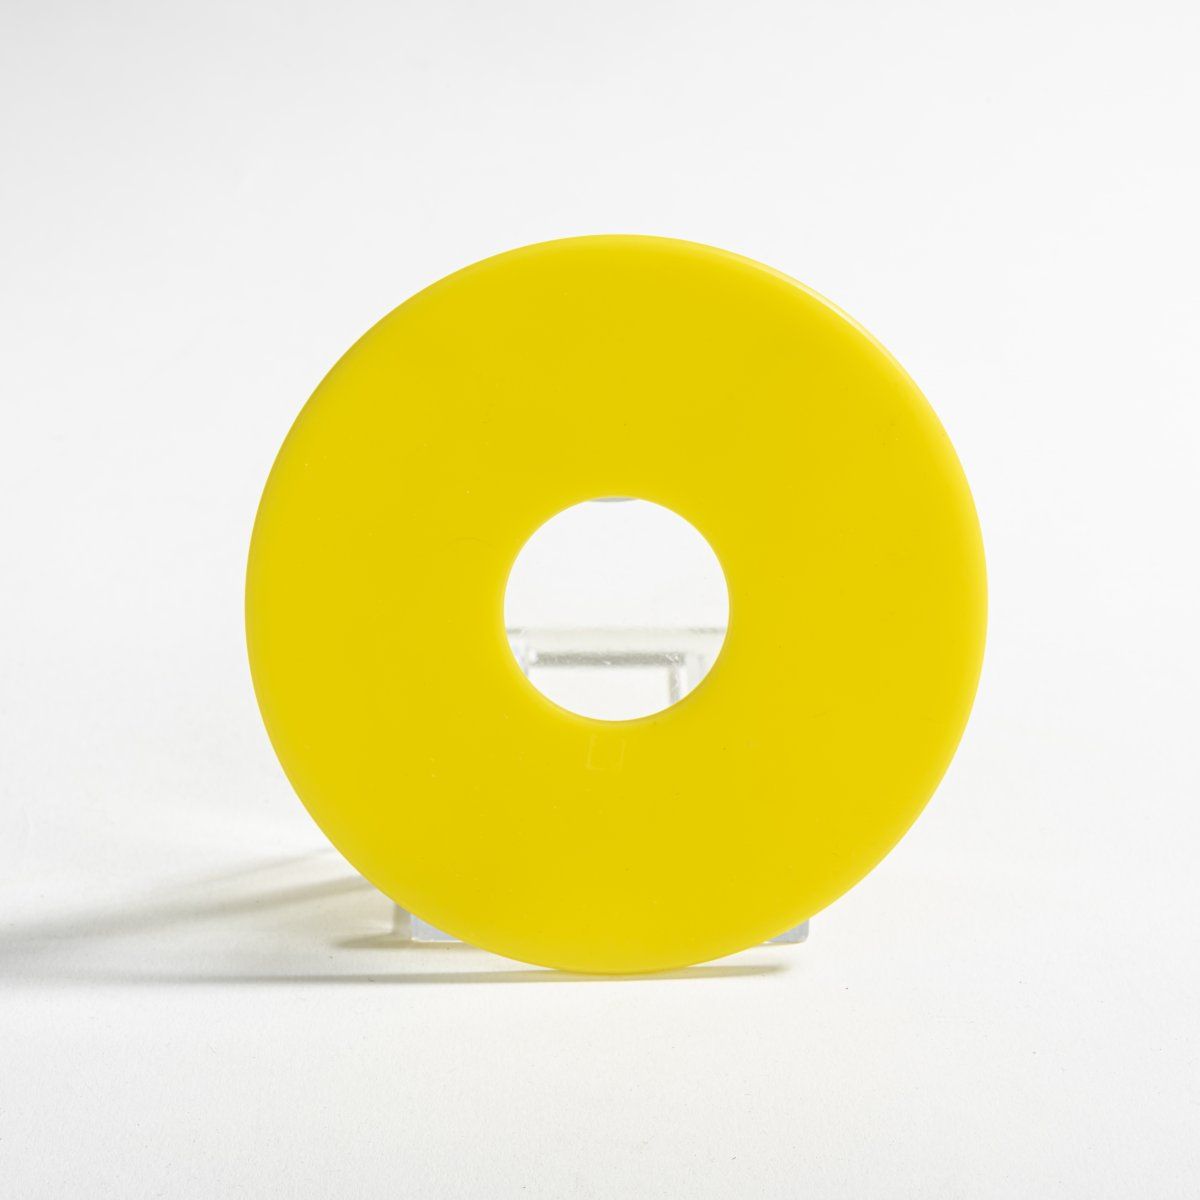 Null 赫尔曼-赫姆森（1953年生于奈梅亨，现居杜塞尔多夫），胸针，1985年，黄色塑料。26克。直径98毫米。

签名：艺术家的标记（压印），Maas, &hellip;